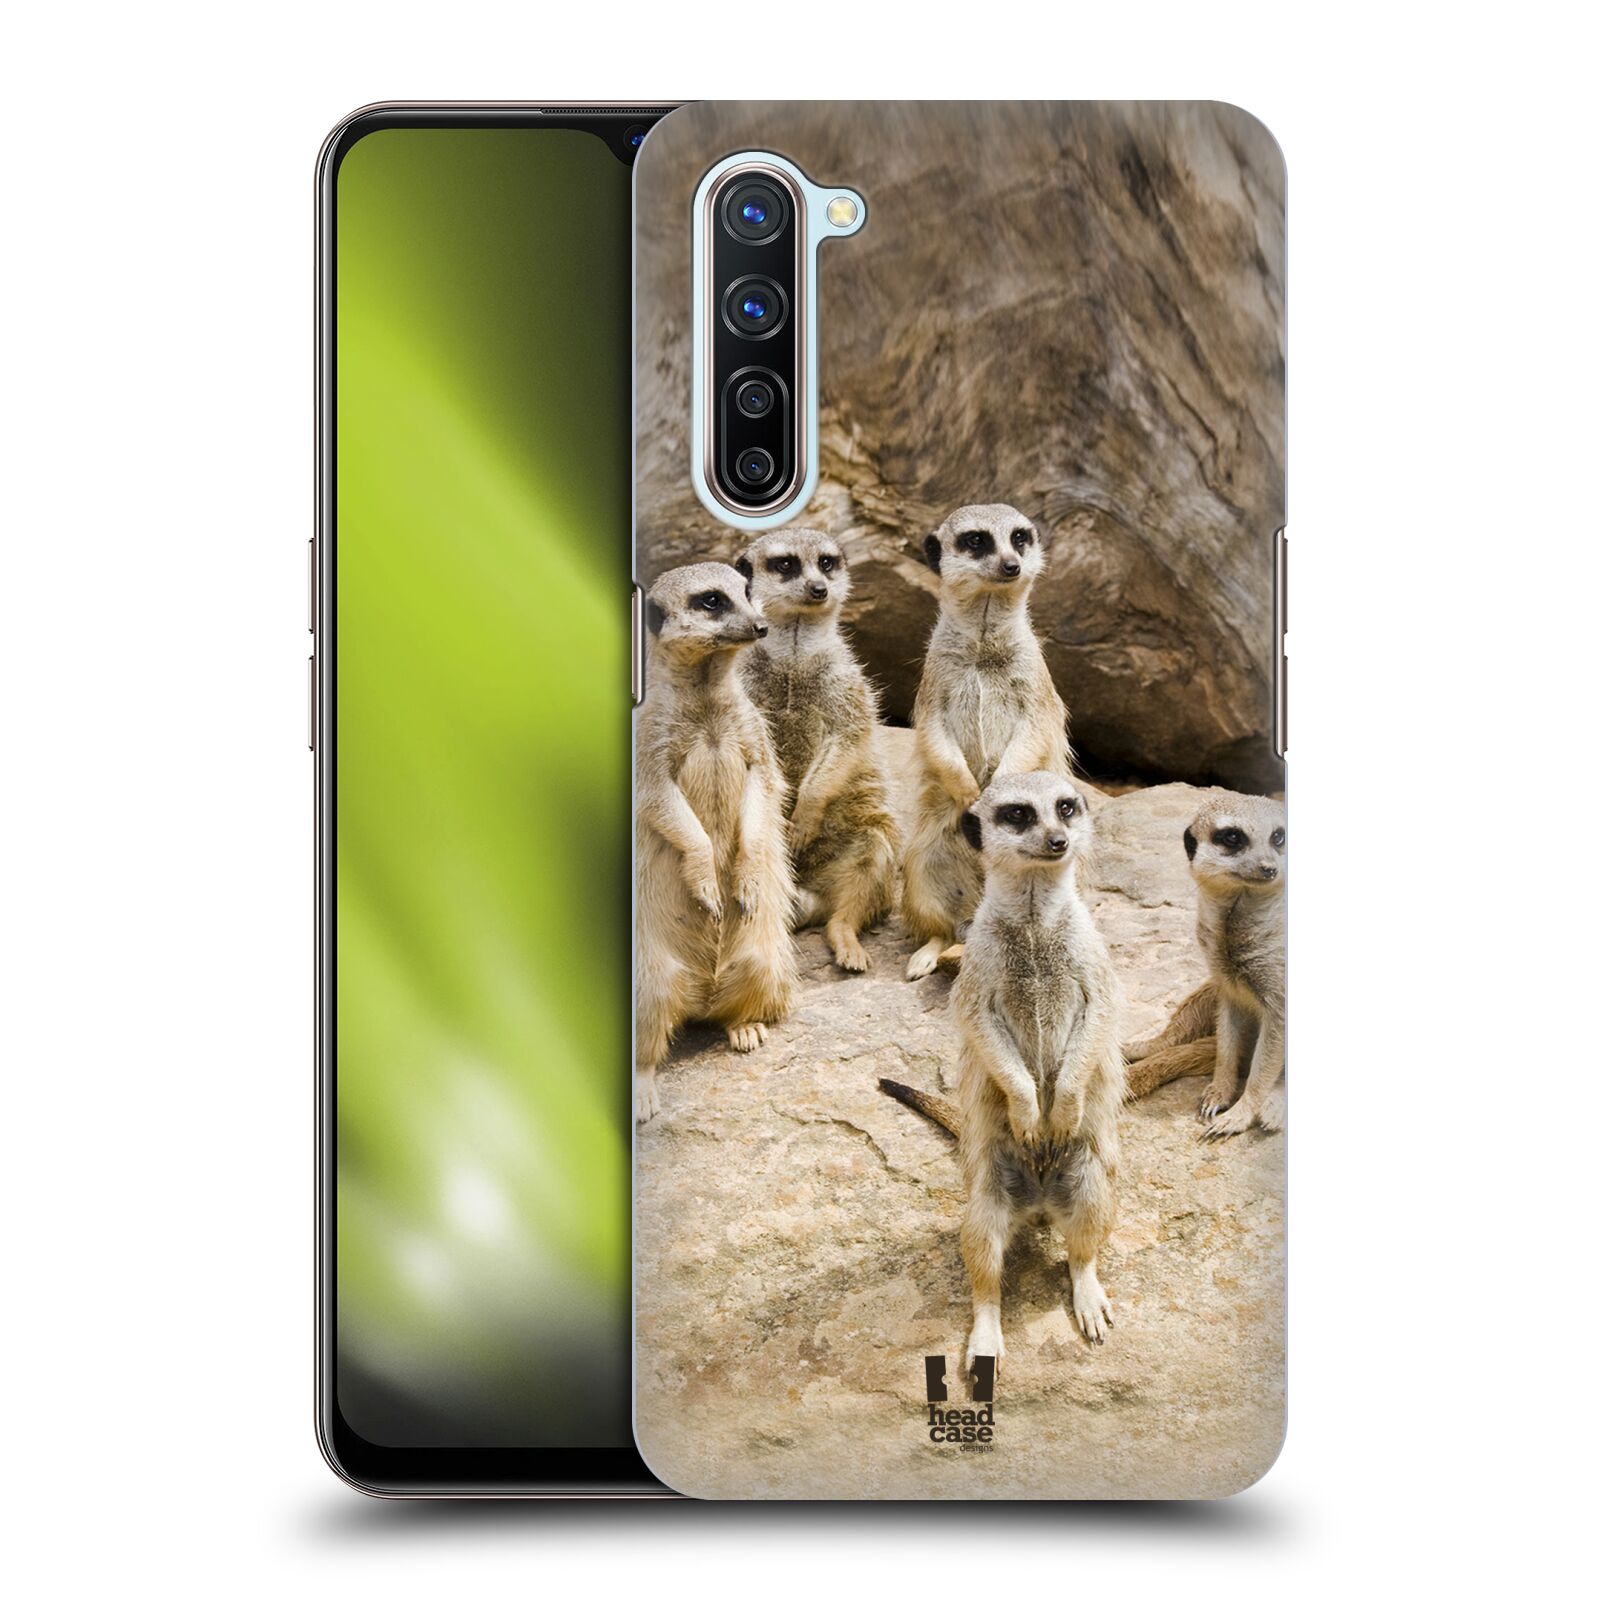 Zadní obal pro mobil Oppo Find X2 LITE - HEAD CASE - Svět zvířat roztomilé surikaty